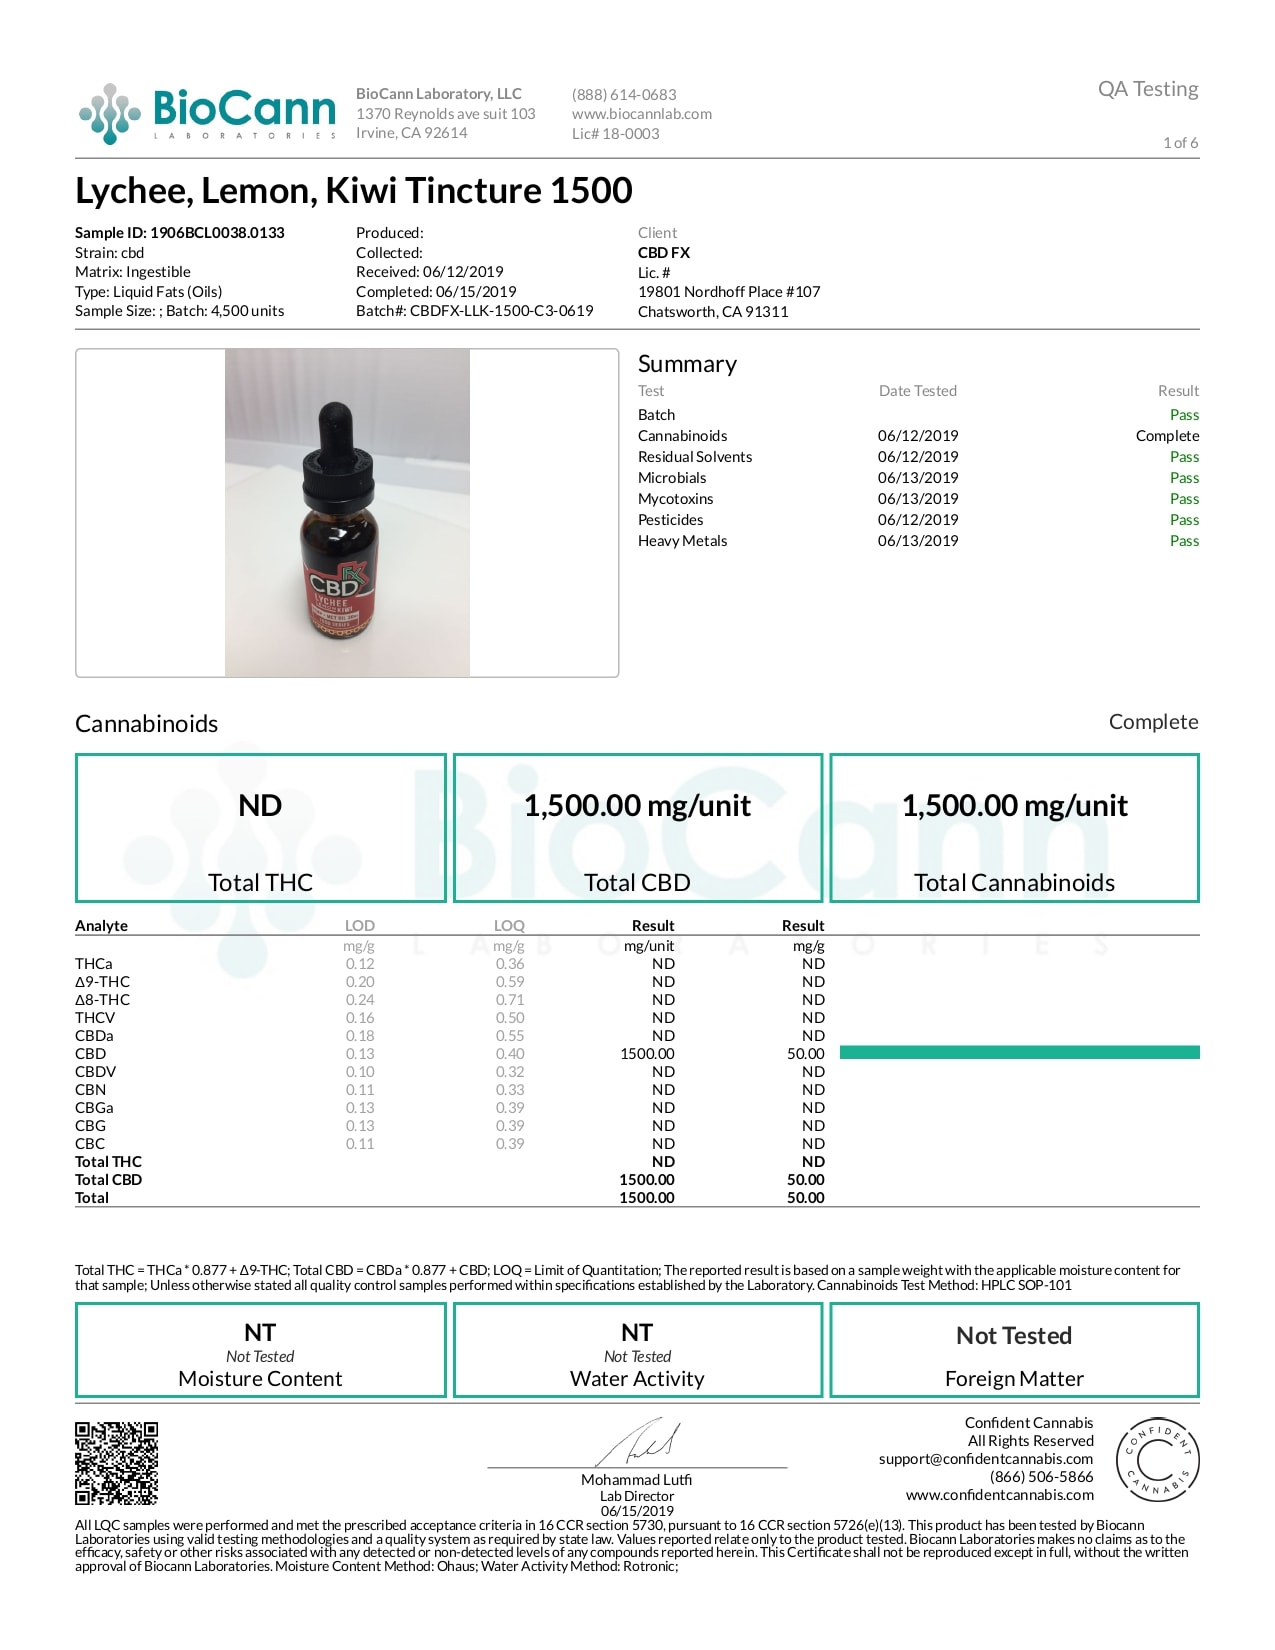 CBDfx Lychee Lemon Kiwi Lab Report CBD Oil Tincture 1500mg